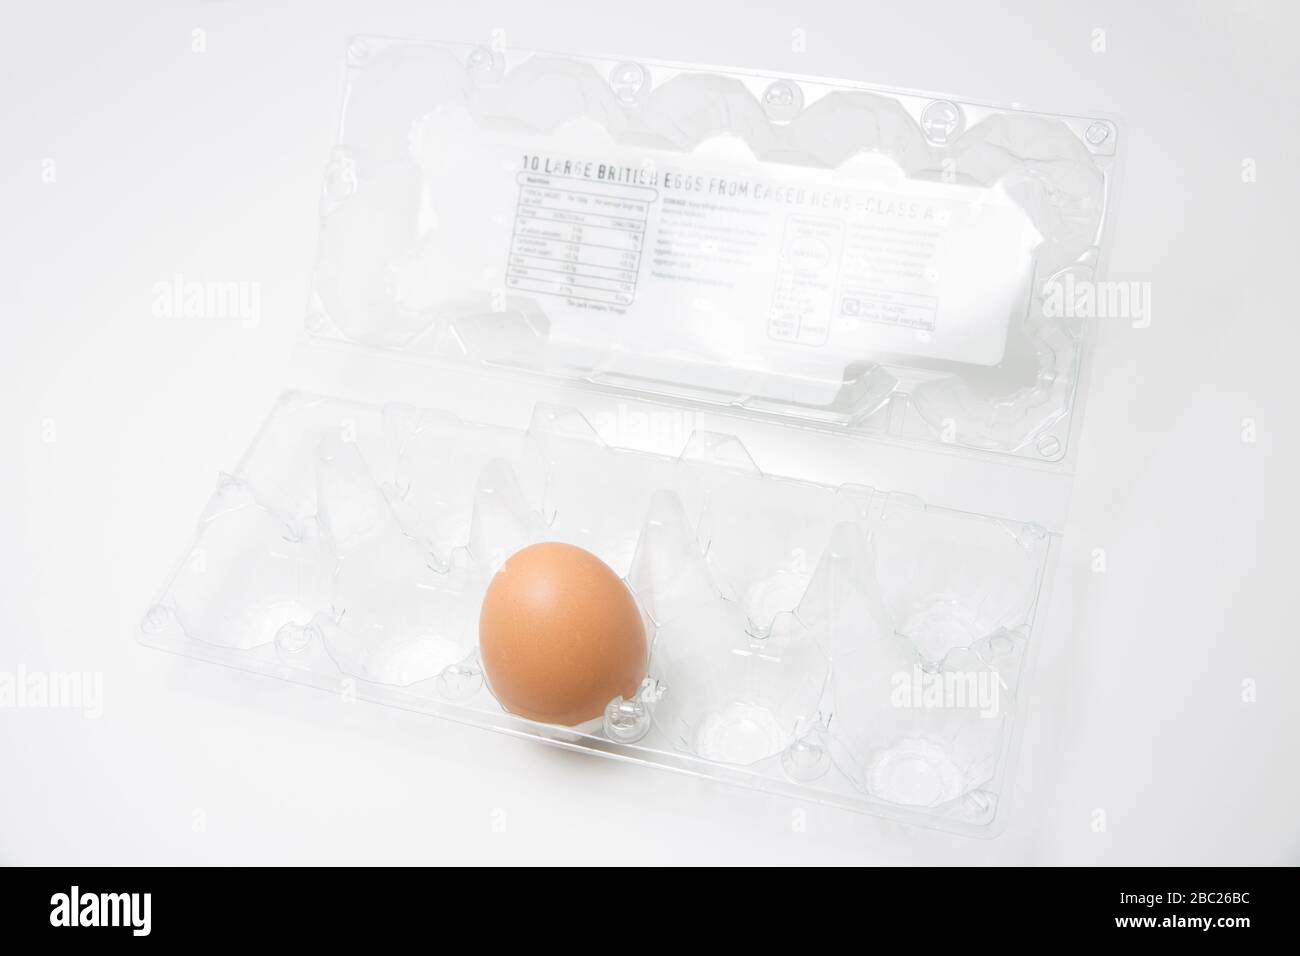 Ein einzelnes, unbehacktes Ei aus einer gekackten Henne in einem Plastikeierkasten. Eier waren eines von mehreren Artikeln, die sich beim Ausbruch des Coronavirus schnell ausverkauften. Tun Stockfoto